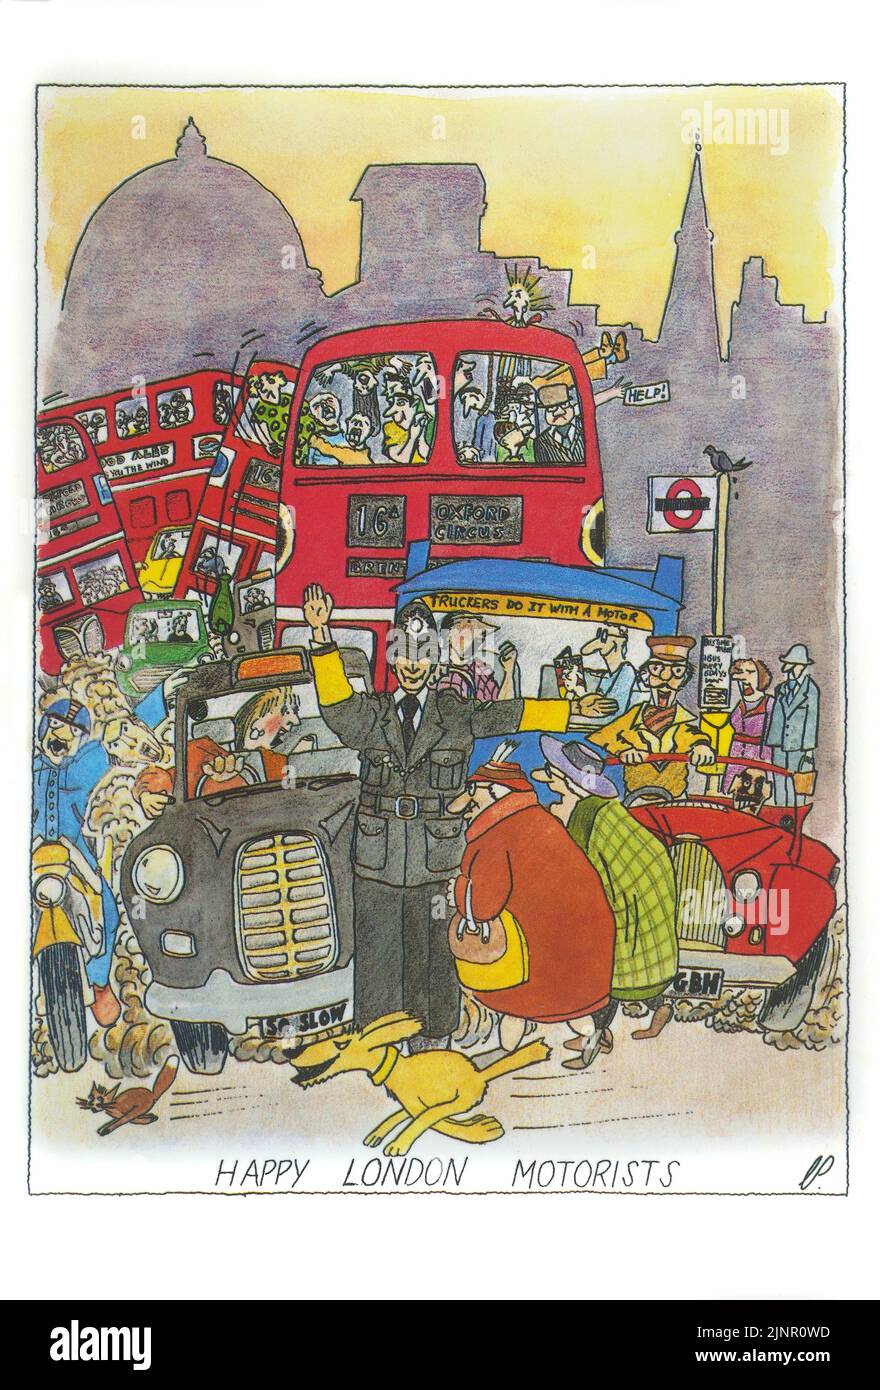 Felices motoristas de Londres. Divertida postal londinense de los años 80 por Chris Parker Foto de stock